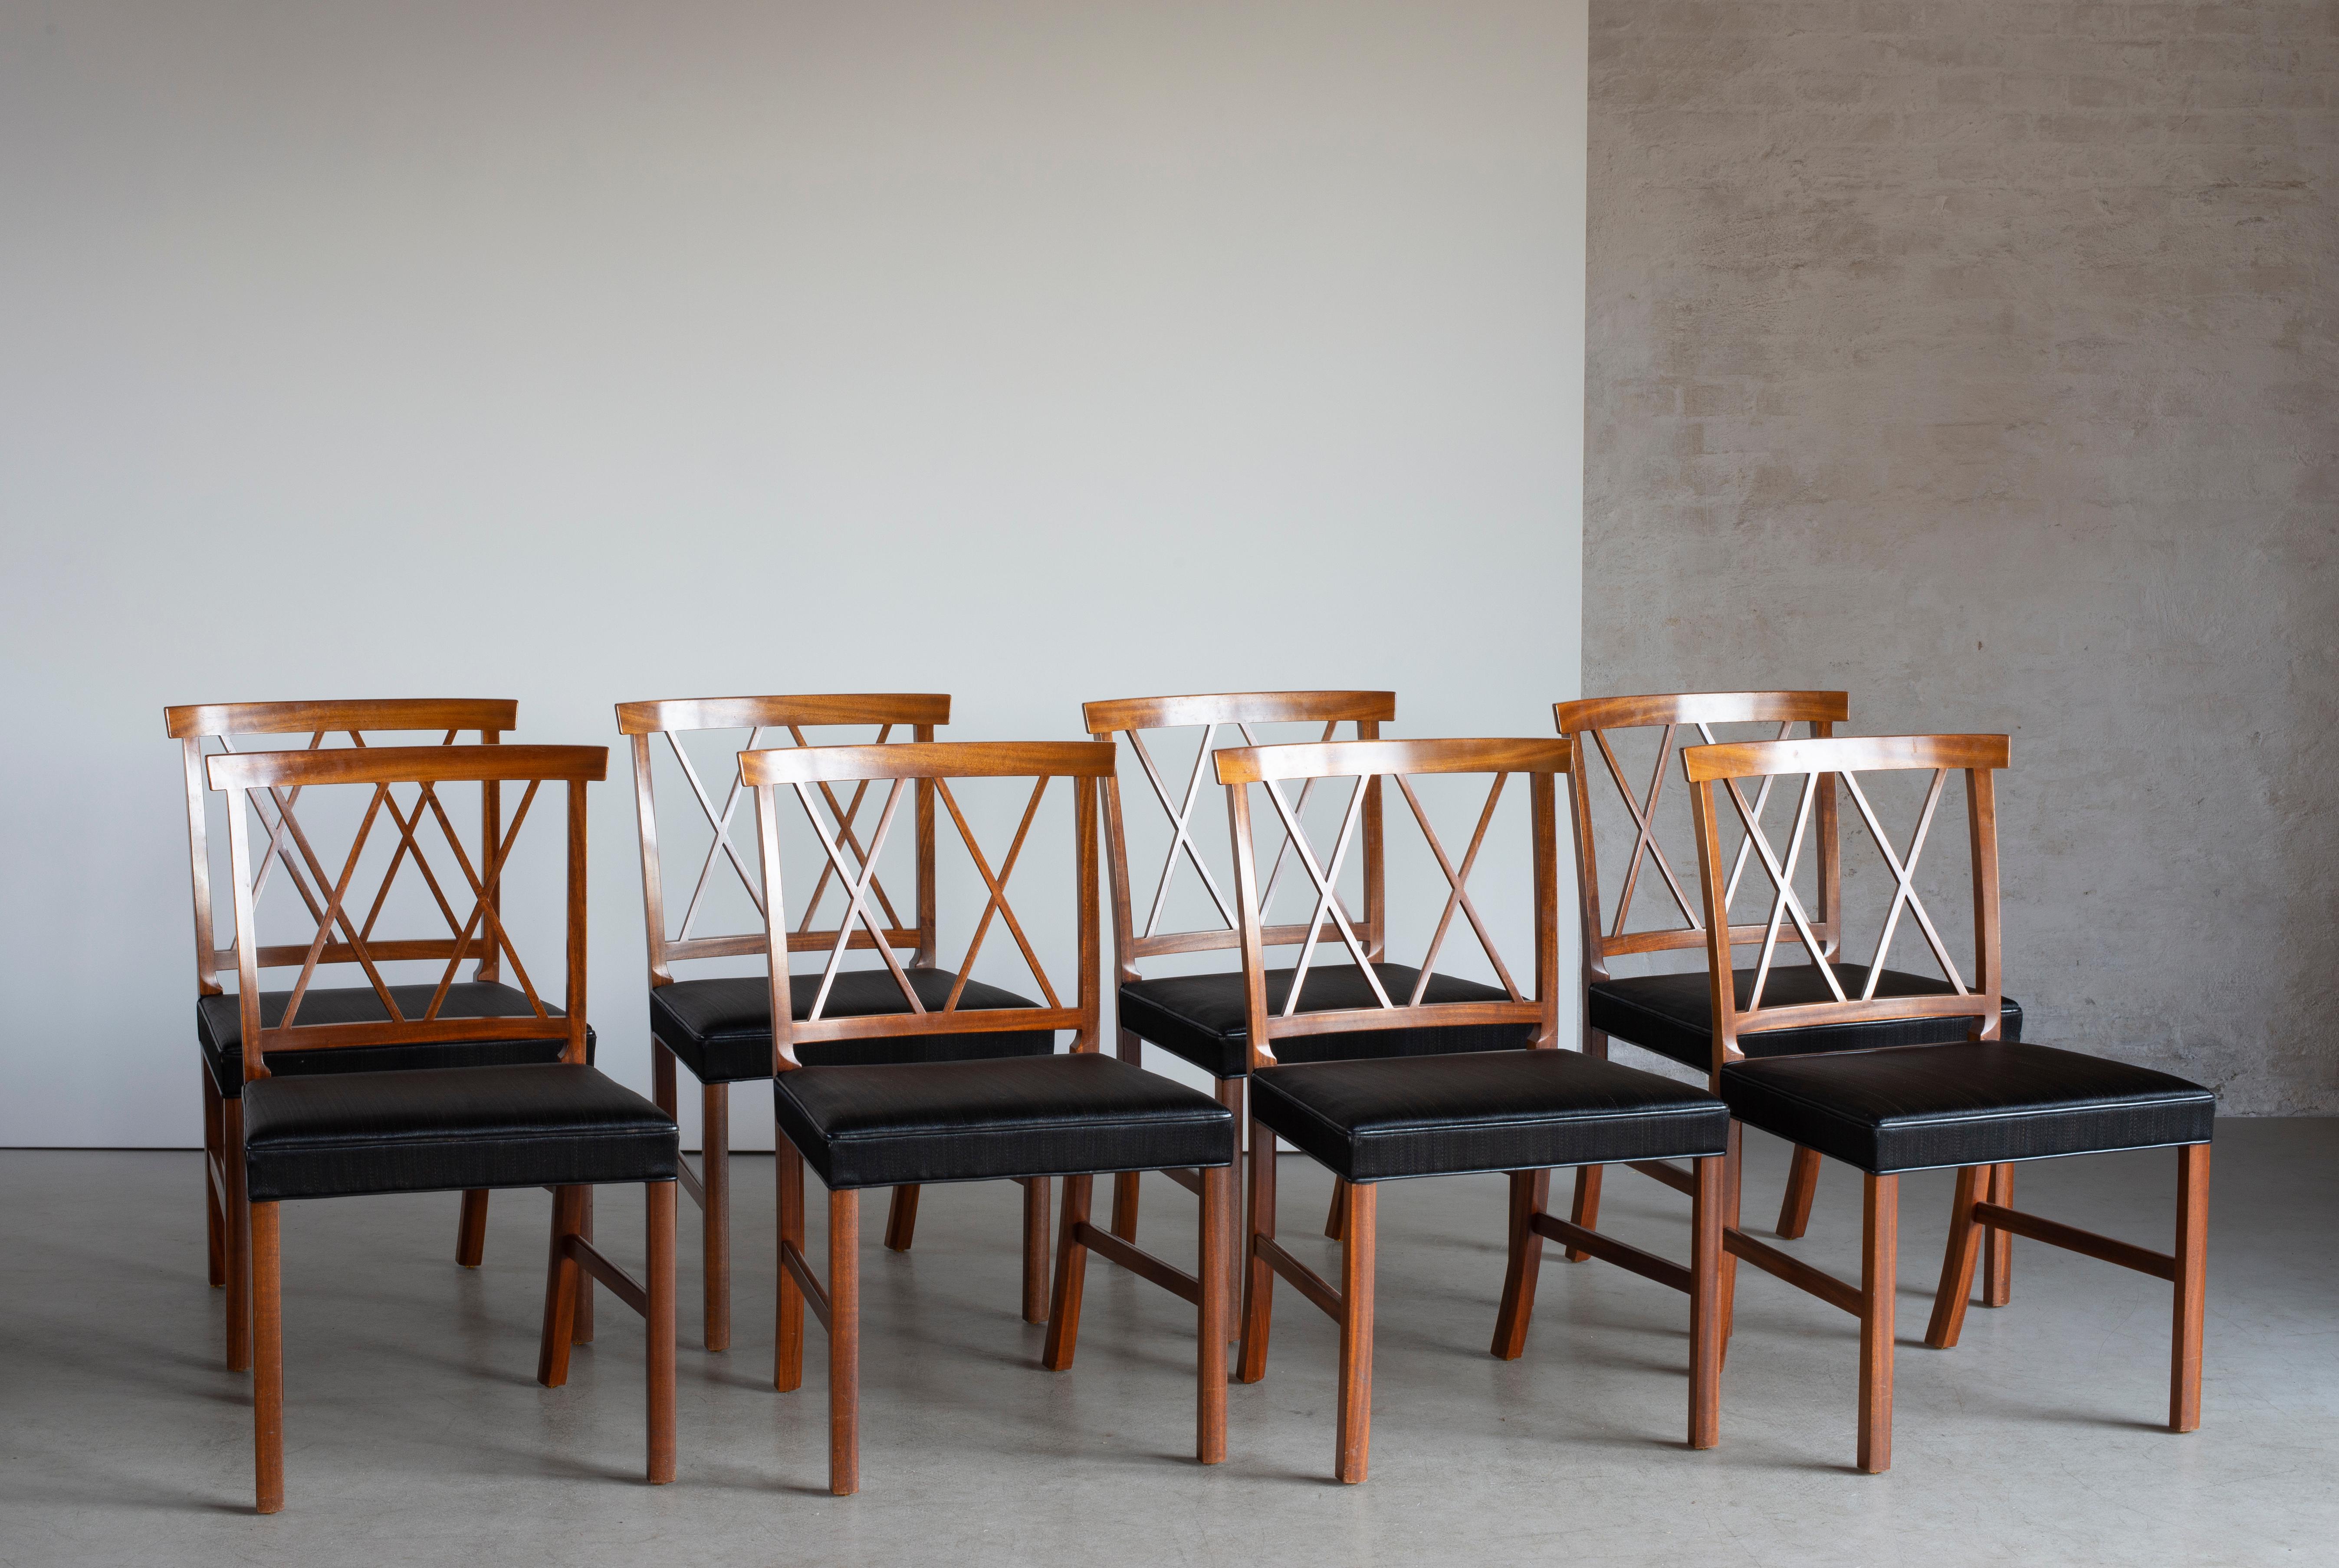 Ole Wanscher Satz von acht Stühlen in Mahagoni mit Sitzen aus schwarzem Rosshaar. Ausgeführt von A. J. Iversen, Kopenhagen, Dänemark.